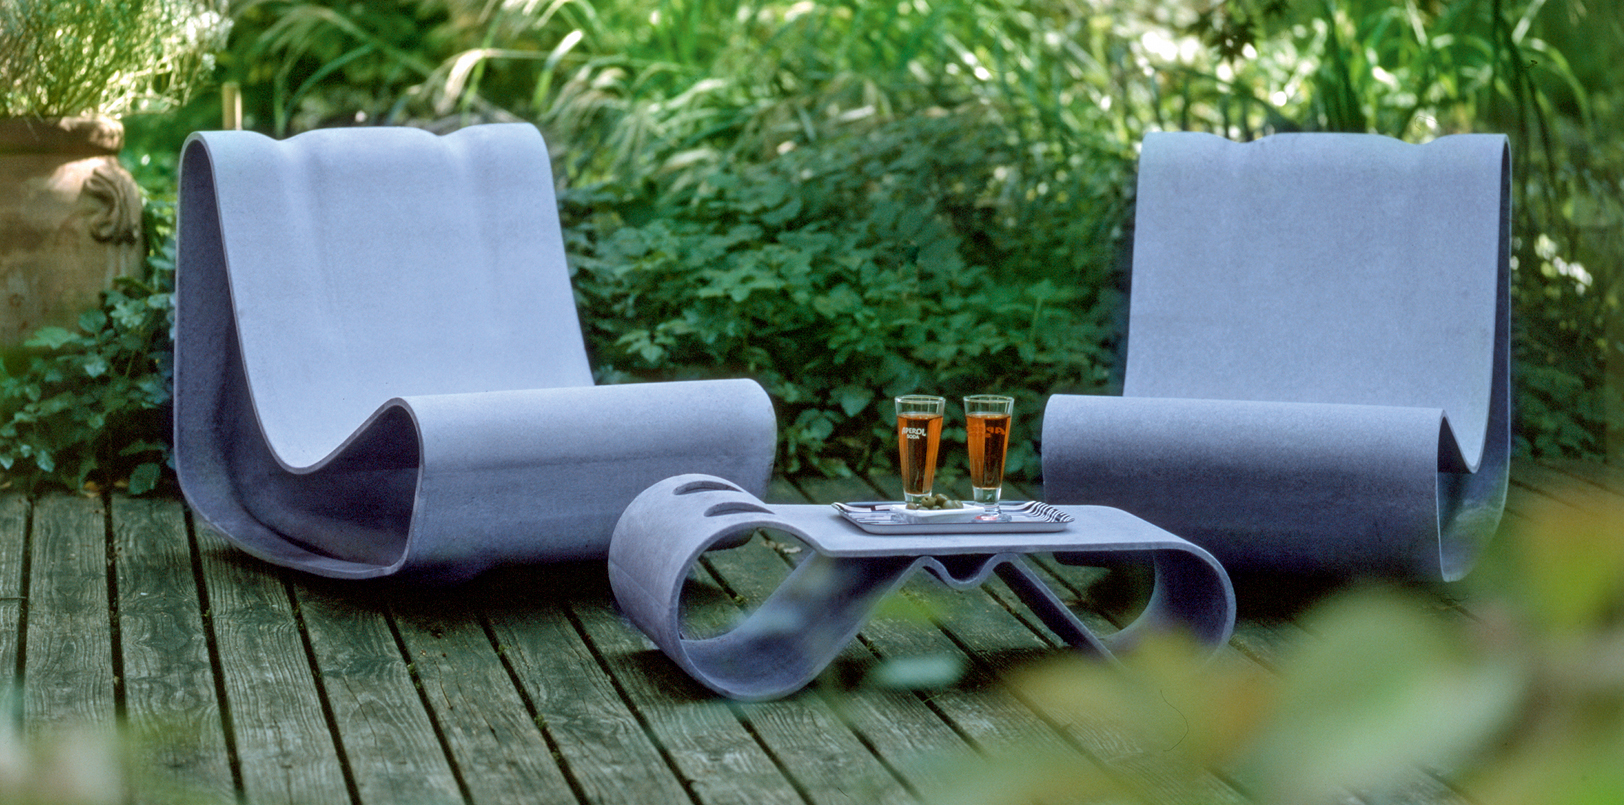 Zwei Guhl-Stühle auf einem Holzdeck mit passendem Beistelltisch mit zwei Gläsern darauf